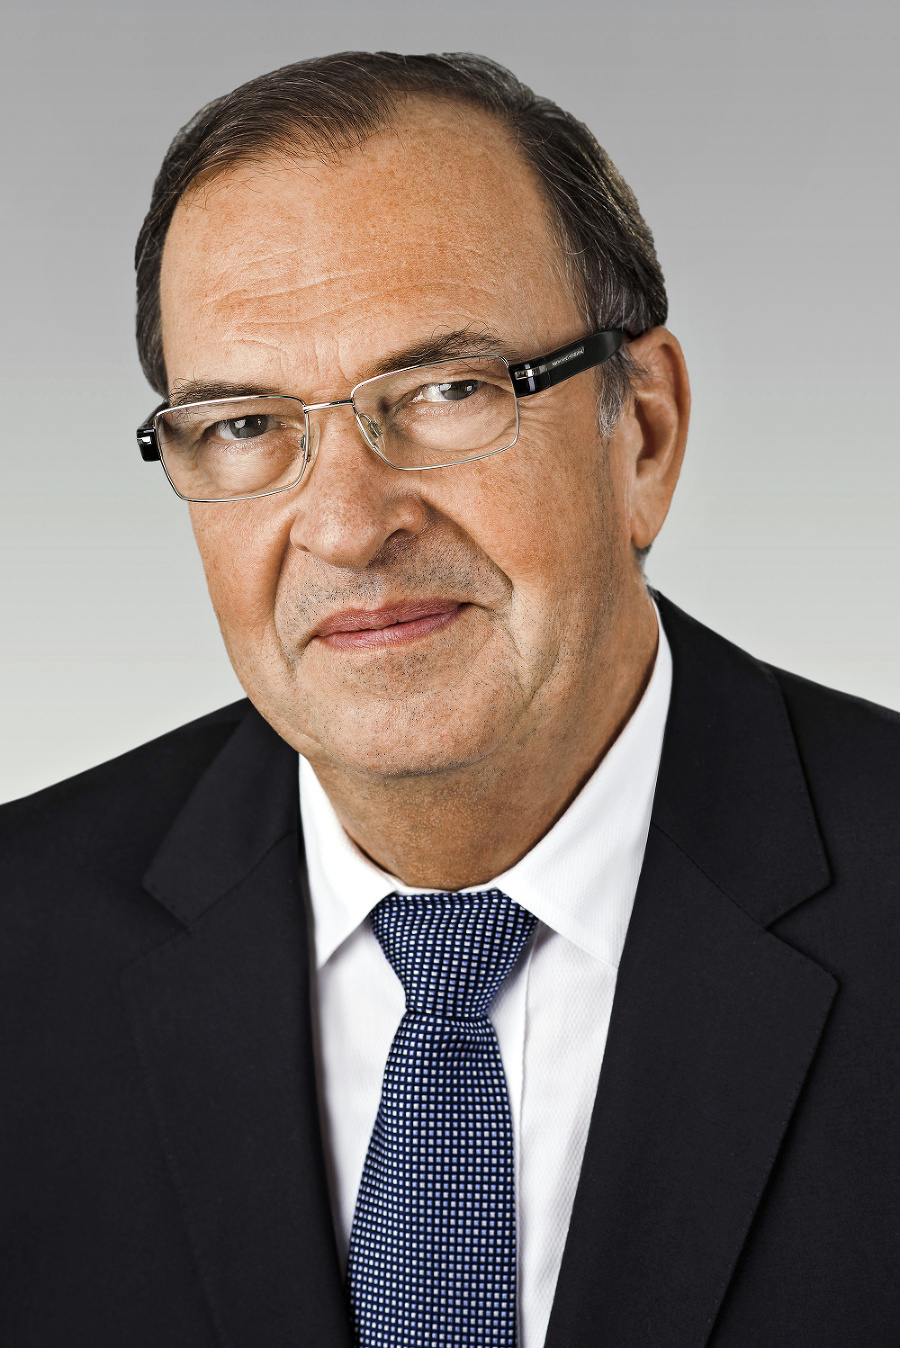 Peter Paško (47)